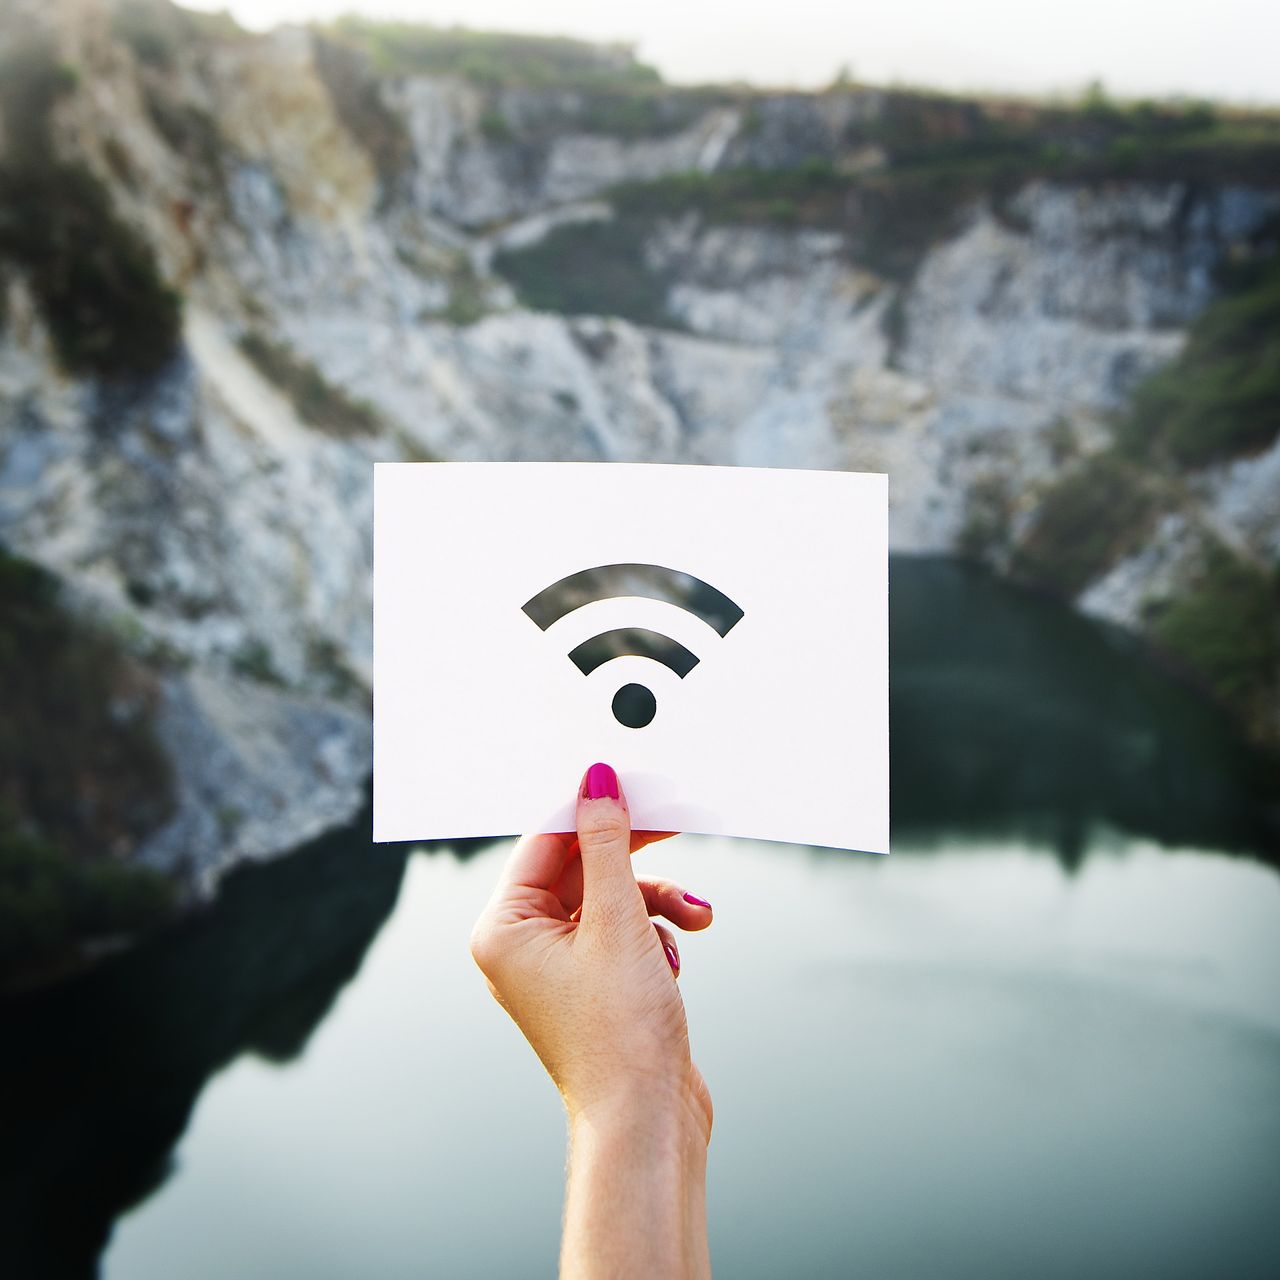 Nowy standard już w tym roku zwiększy bezpieczeństwo sieci Wi-Fi